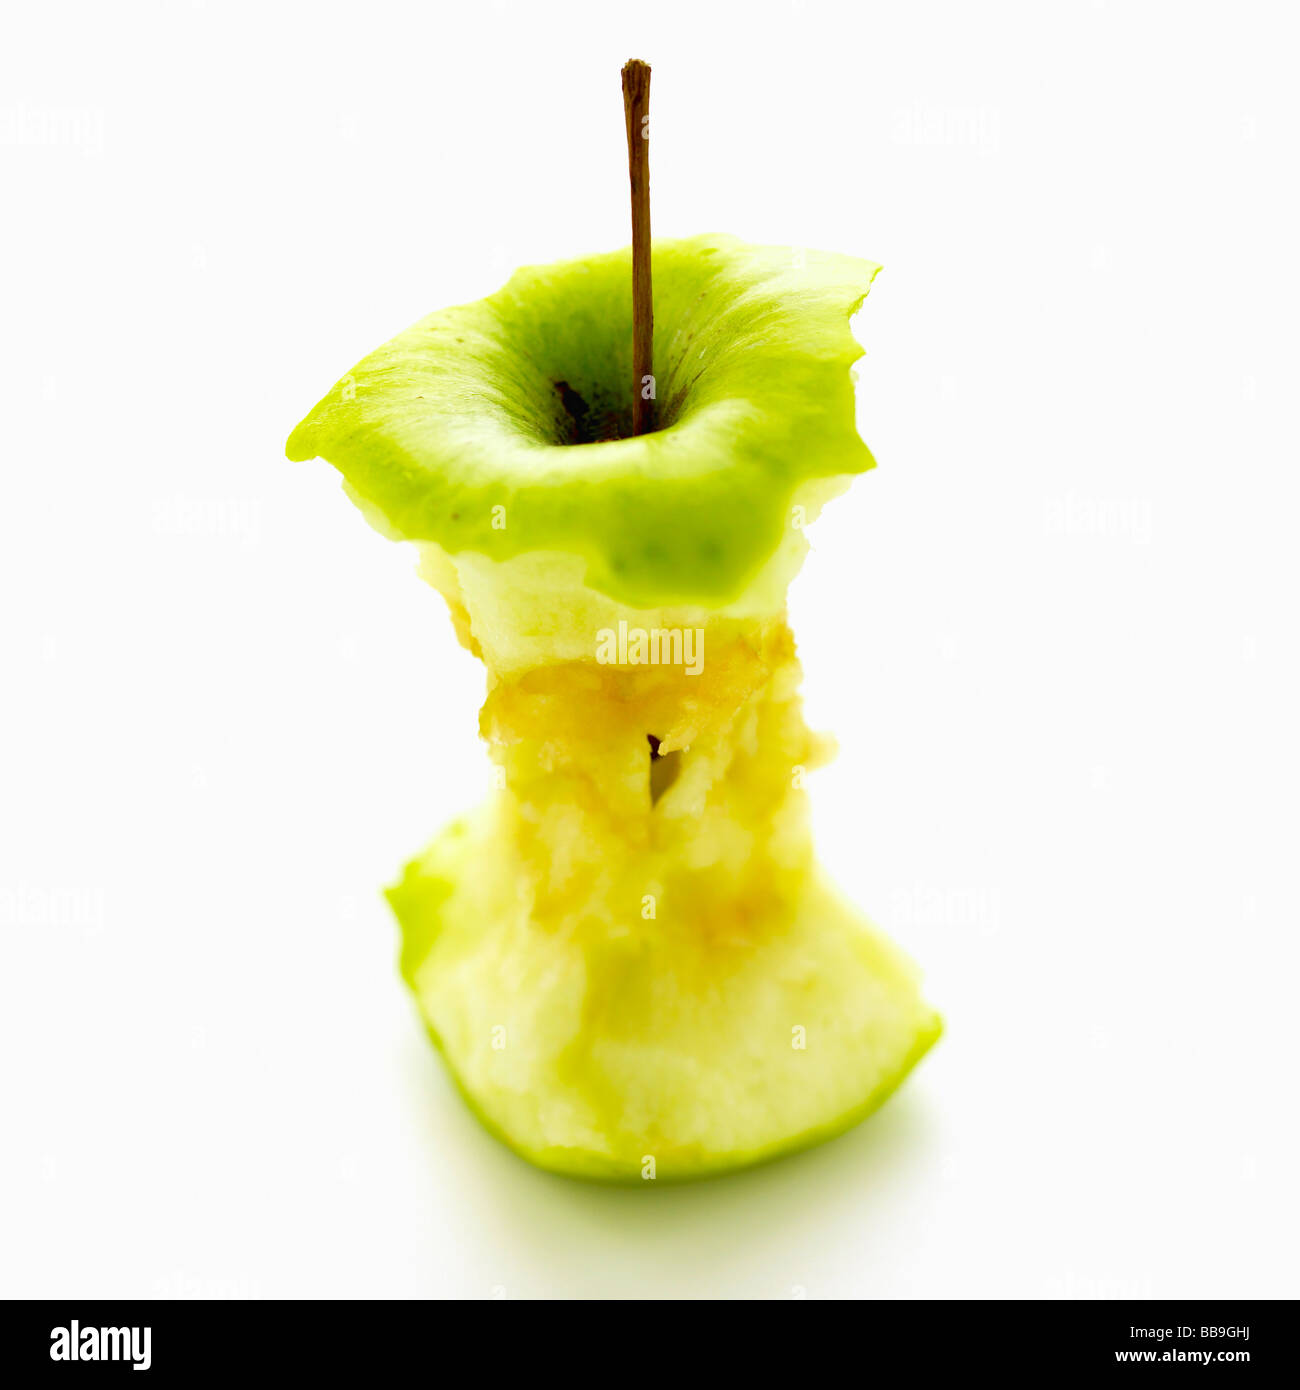 Un apple core aislado sobre un fondo blanco, tiro con foco superficial para enfatizar la forma gráfica sólida. Foto de stock